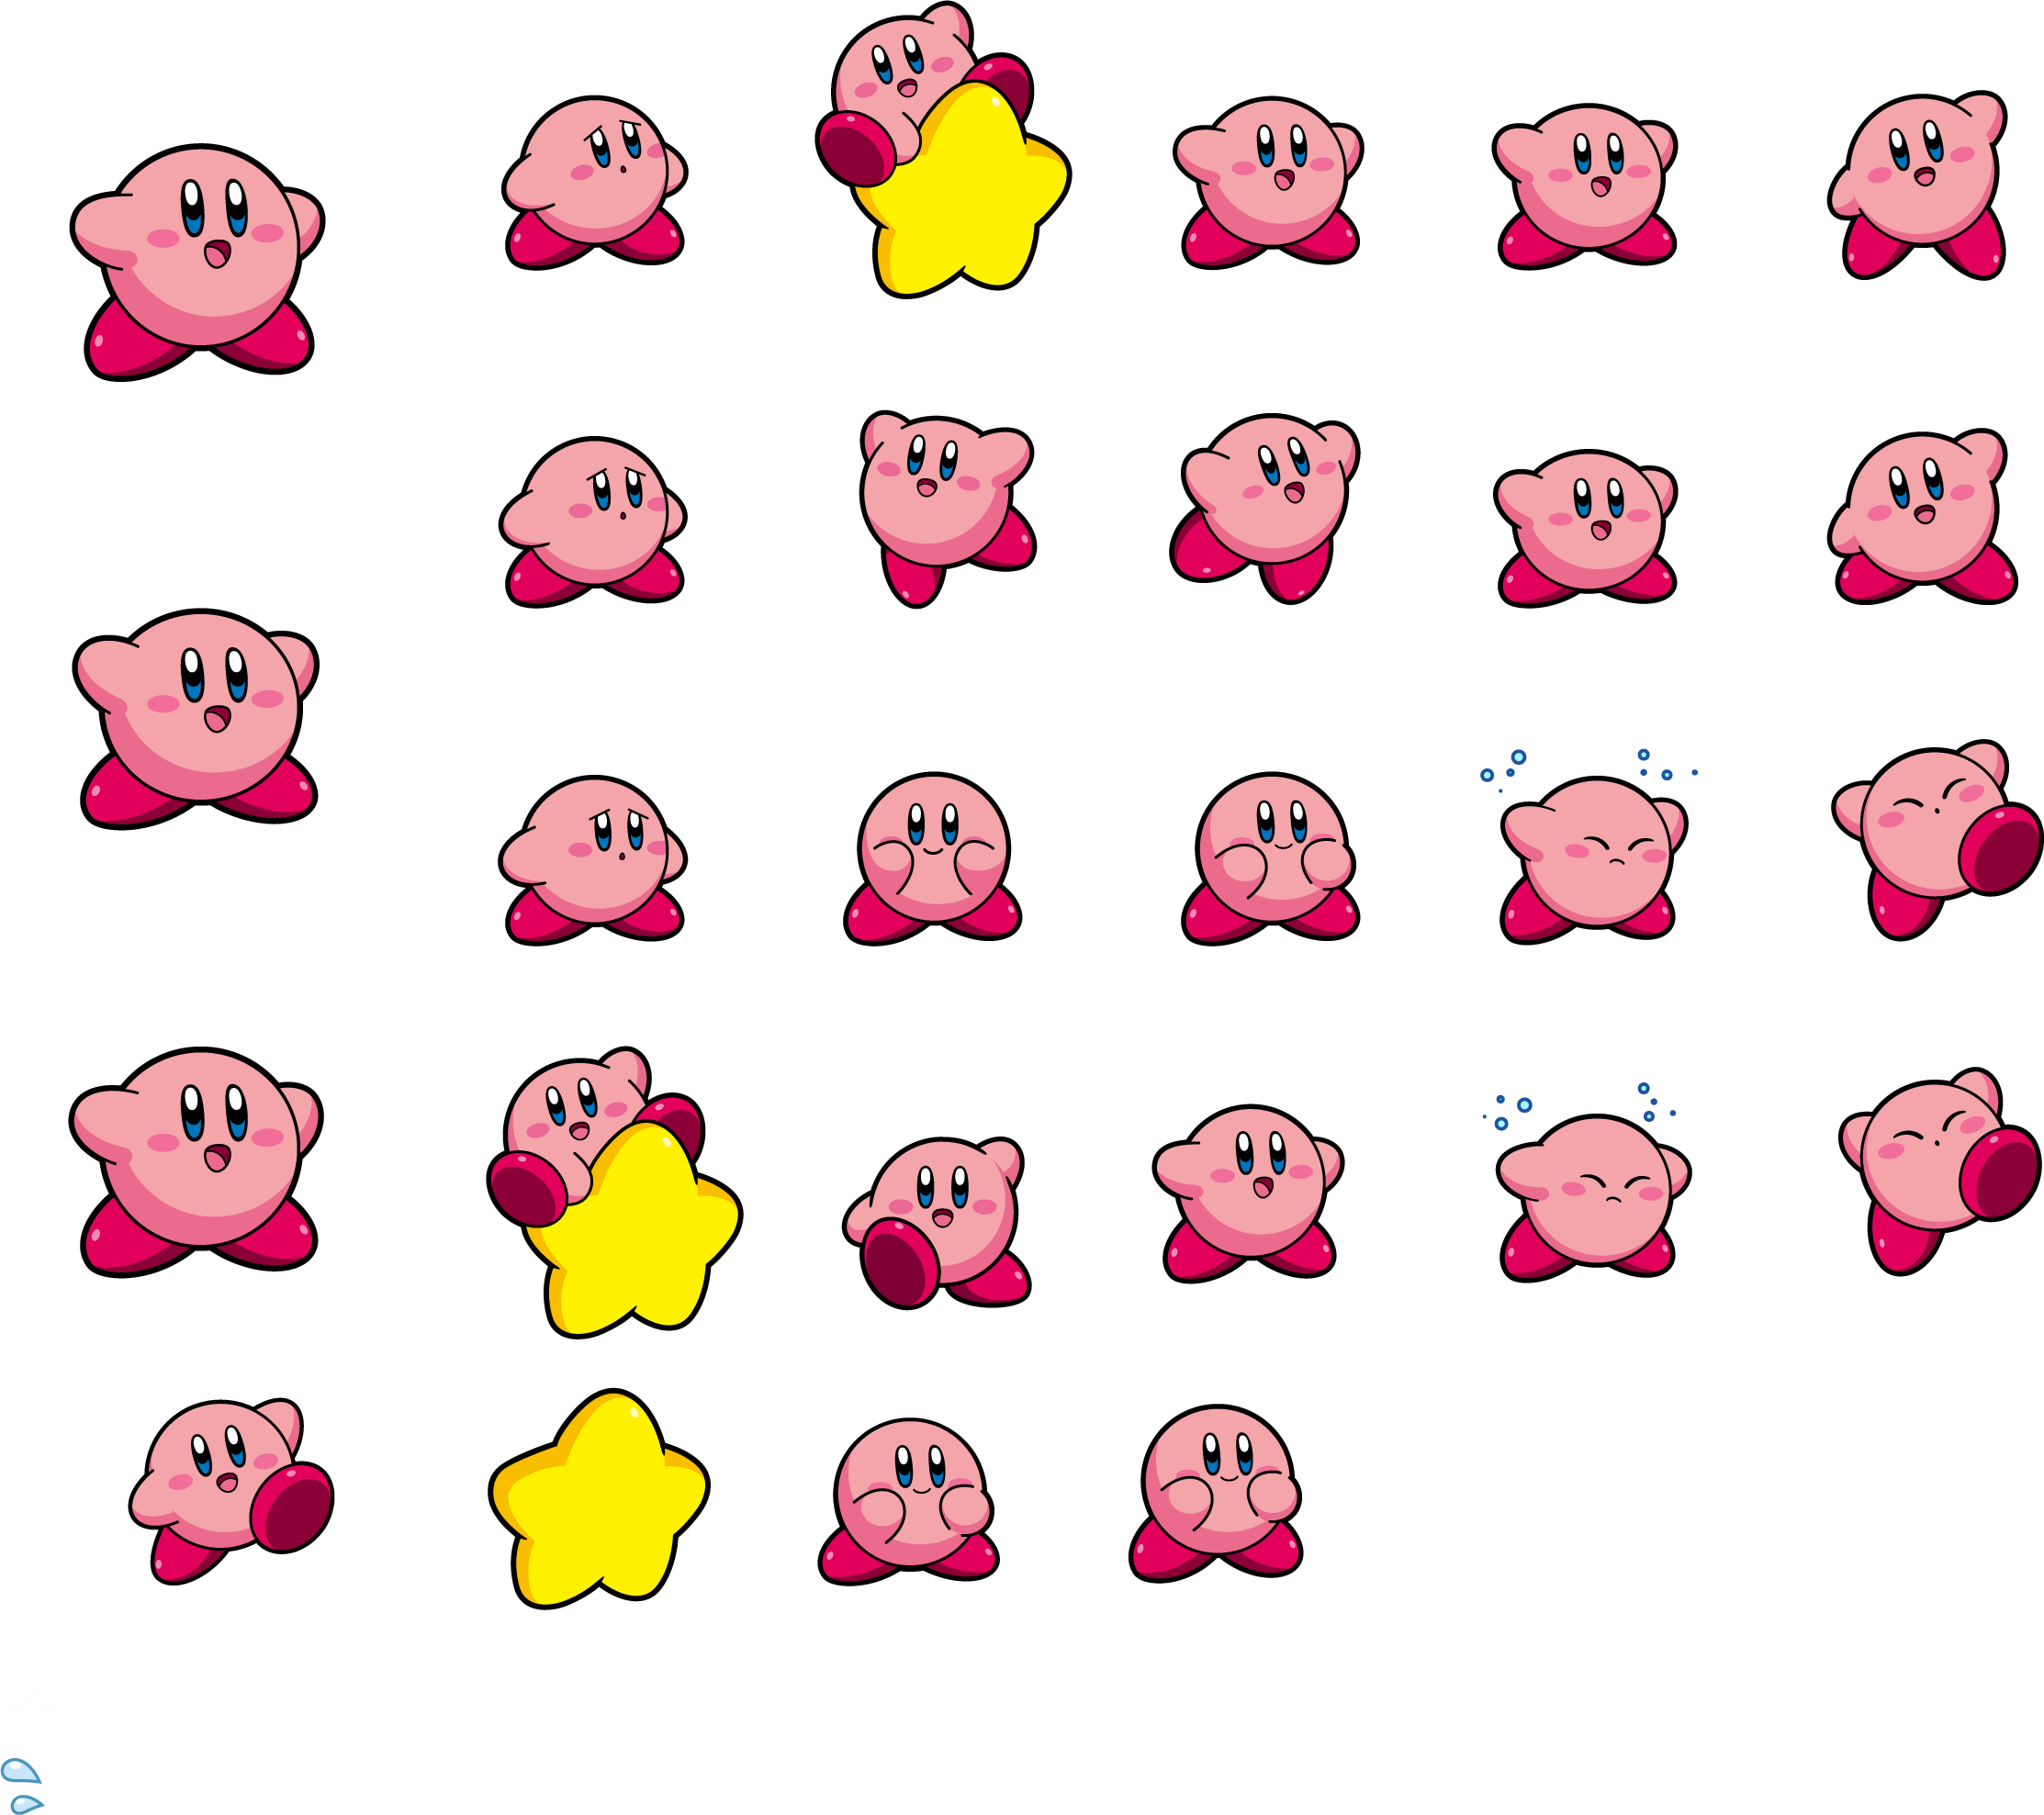 Taiko no Tatsujin: Drum 'n' Fun! - Kirby